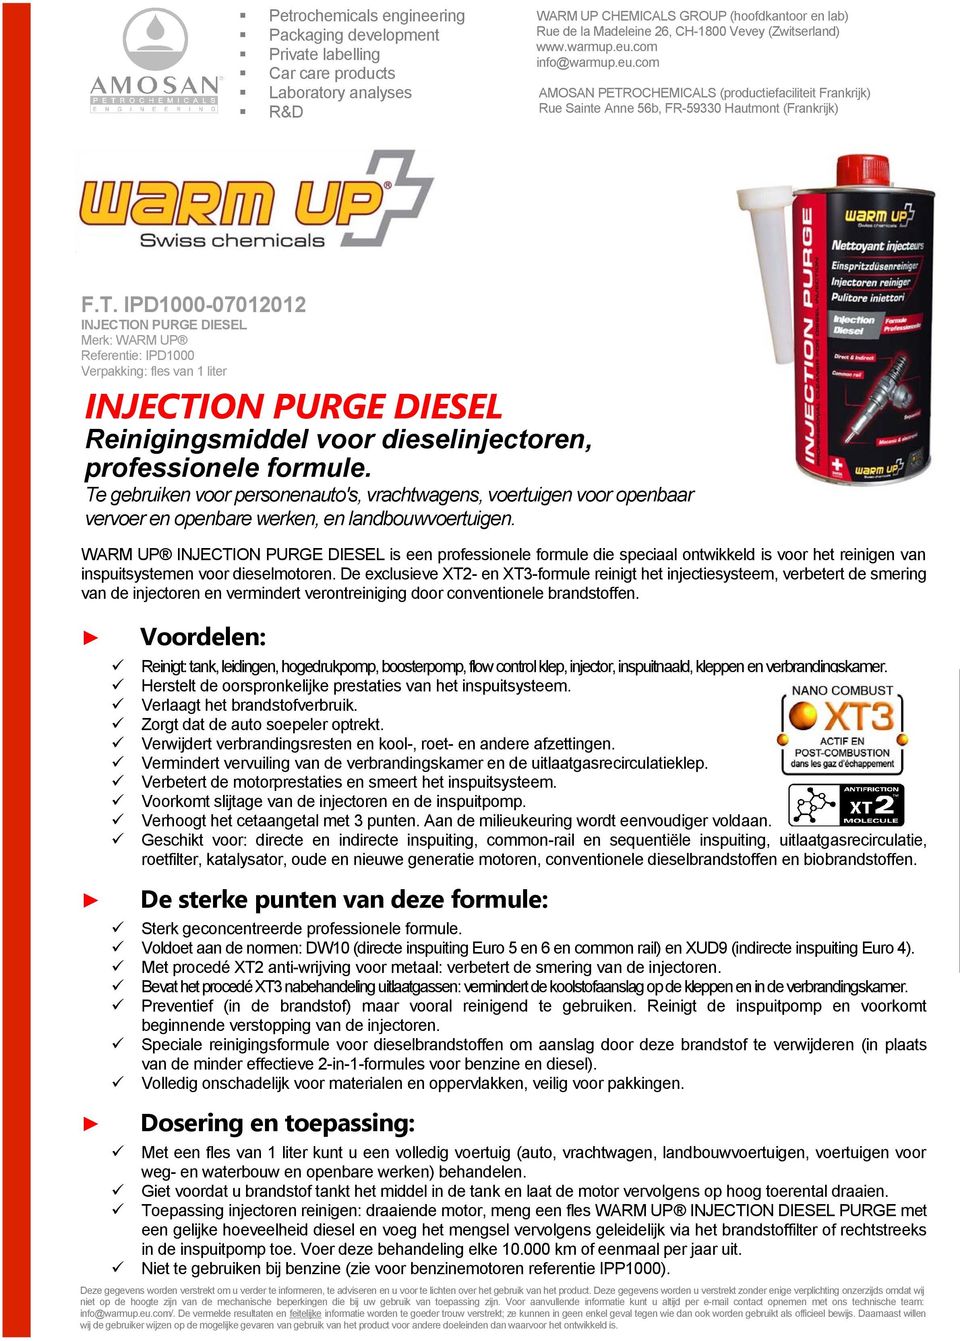 WARM UP INJECTION PURGE DIESEL is een professionele formule die speciaal ontwikkeld is voor het reinigen van inspuitsystemen voor dieselmotoren.